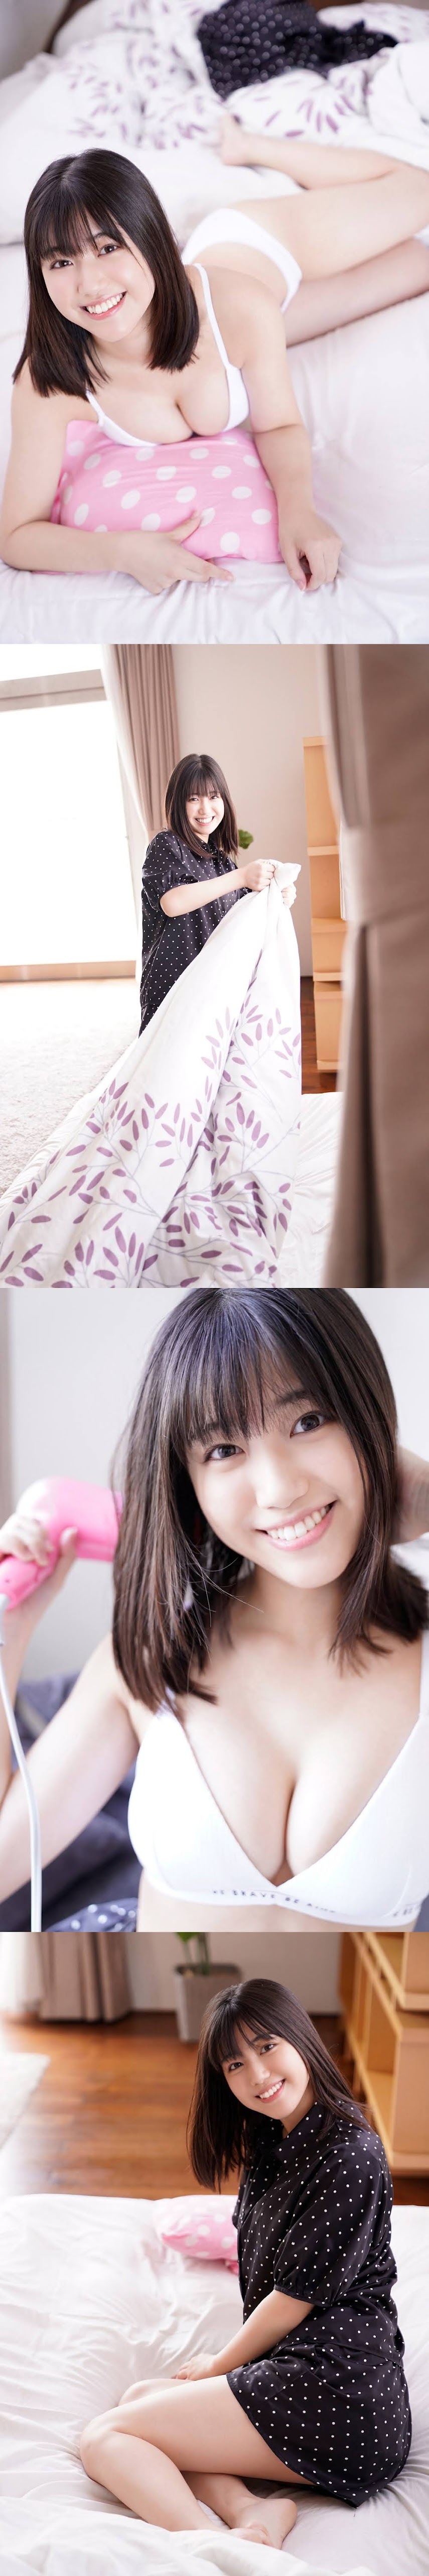 [Yanmaga Web] Karen Izumi 和泉芳怜 - Everyone's Morning Routing Cavu 01 みんなのモーニングルーティングラビア01 (2021-11-05)   P214579 sexy girls image jav